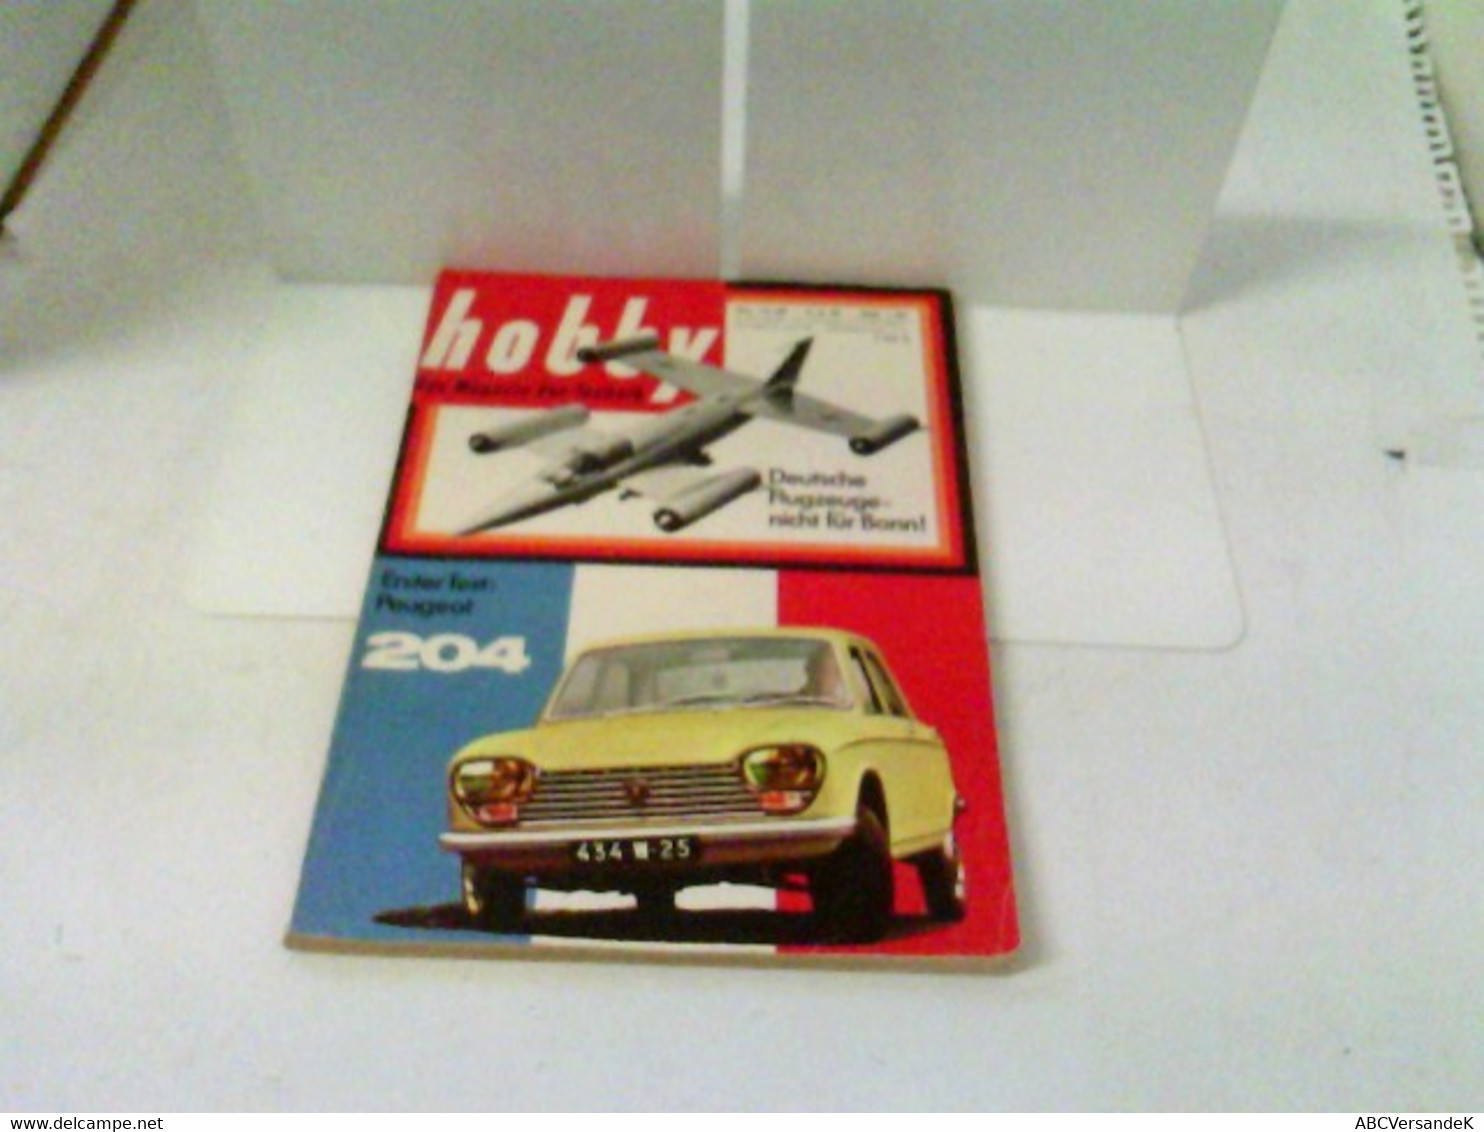 Hobby - Das Magazin Der Technik - Heft 1965/12 - Erster Test: Peugeot 204 U.v.m. - Technical